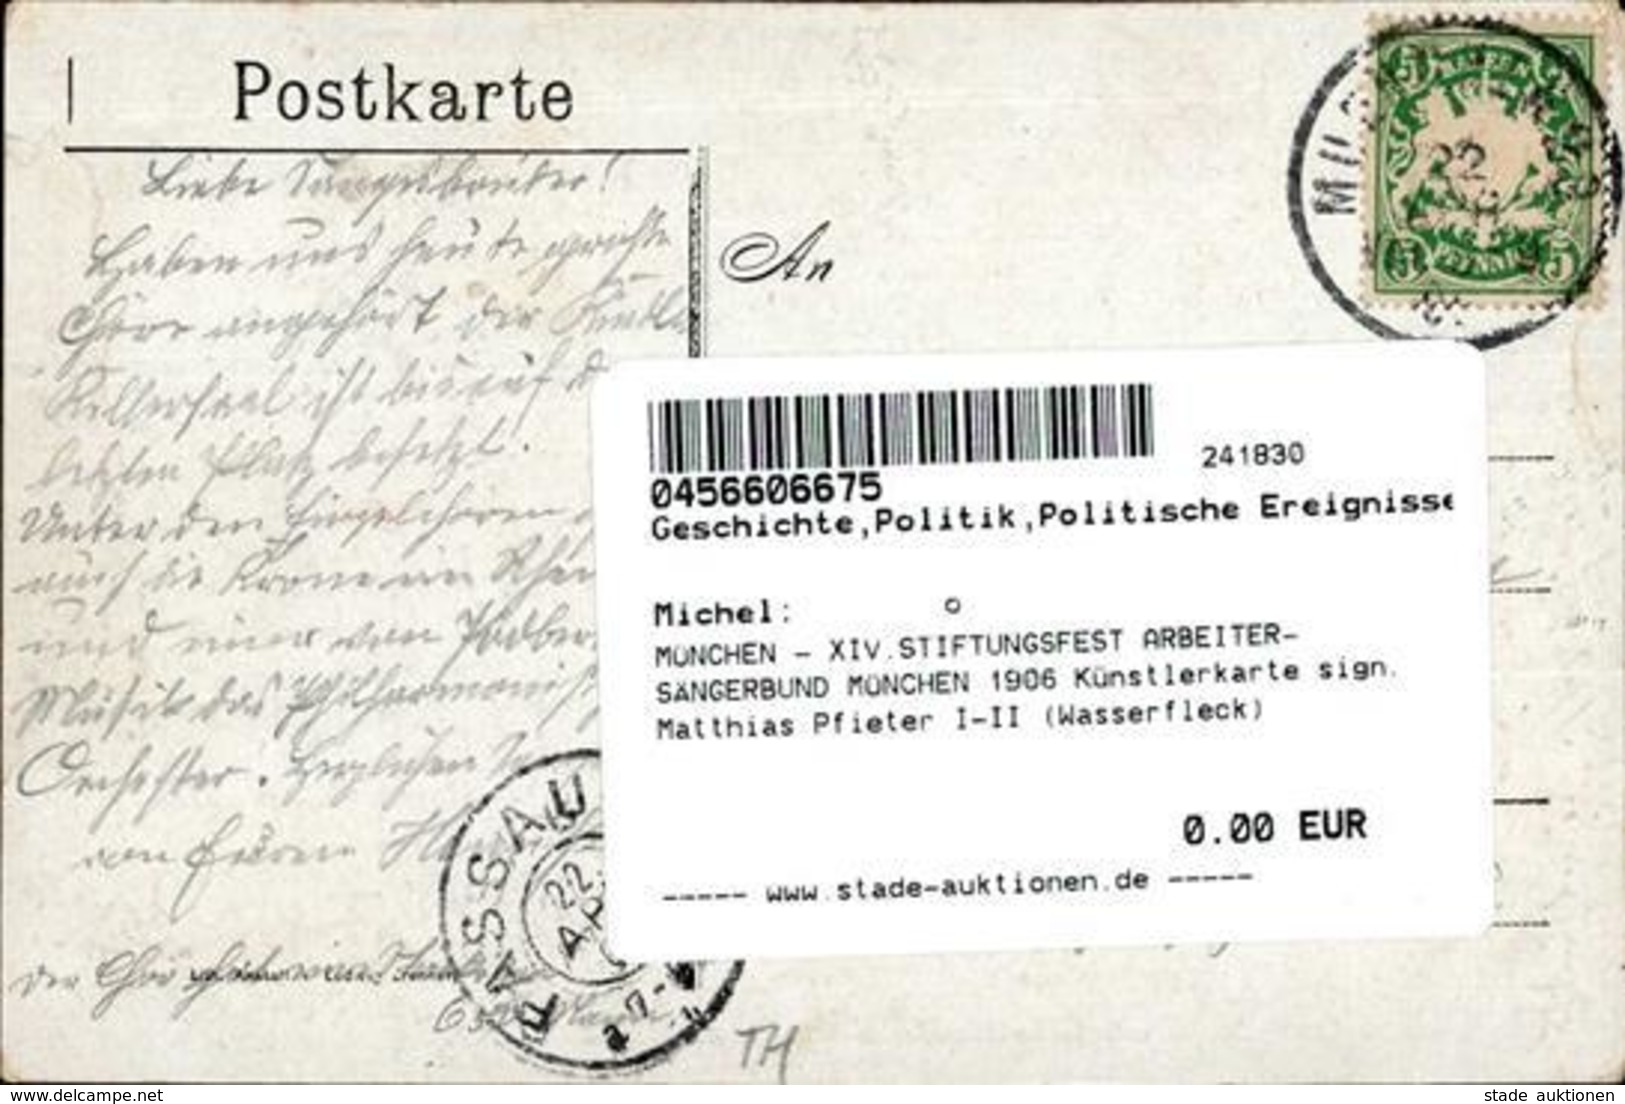 MÜNCHEN - XIV.STIFTUNGSFEST ARBEITER-SÄNGERBUND MÜNCHEN 1906 Künstlerkarte Sign. Matthias Pfieter I-II (Wasserfleck) - Events